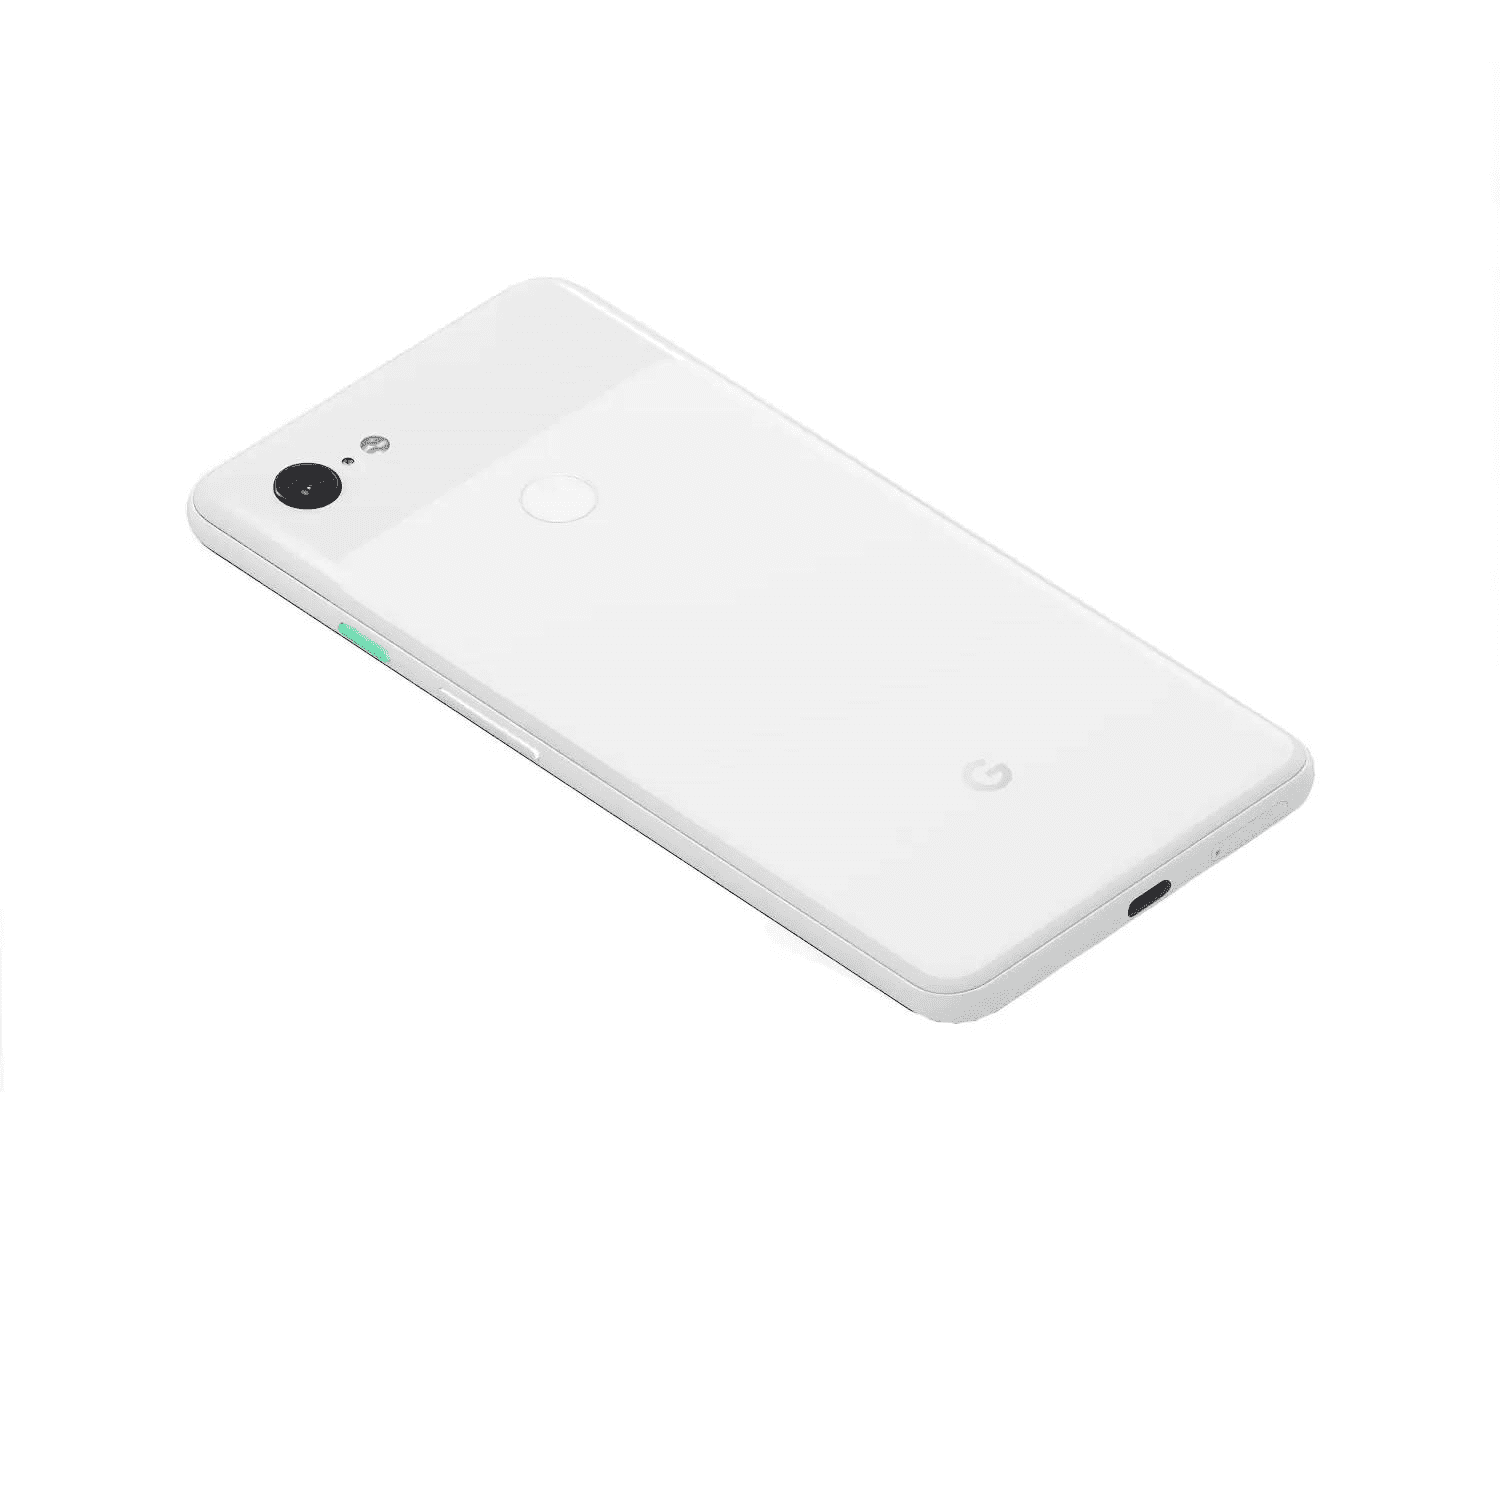 スマートフォン/携帯電話 スマートフォン本体 Google Pixel 3 XL 64GB G013C GSM+CDMA Unlocked GOOGLE Edition 4G 